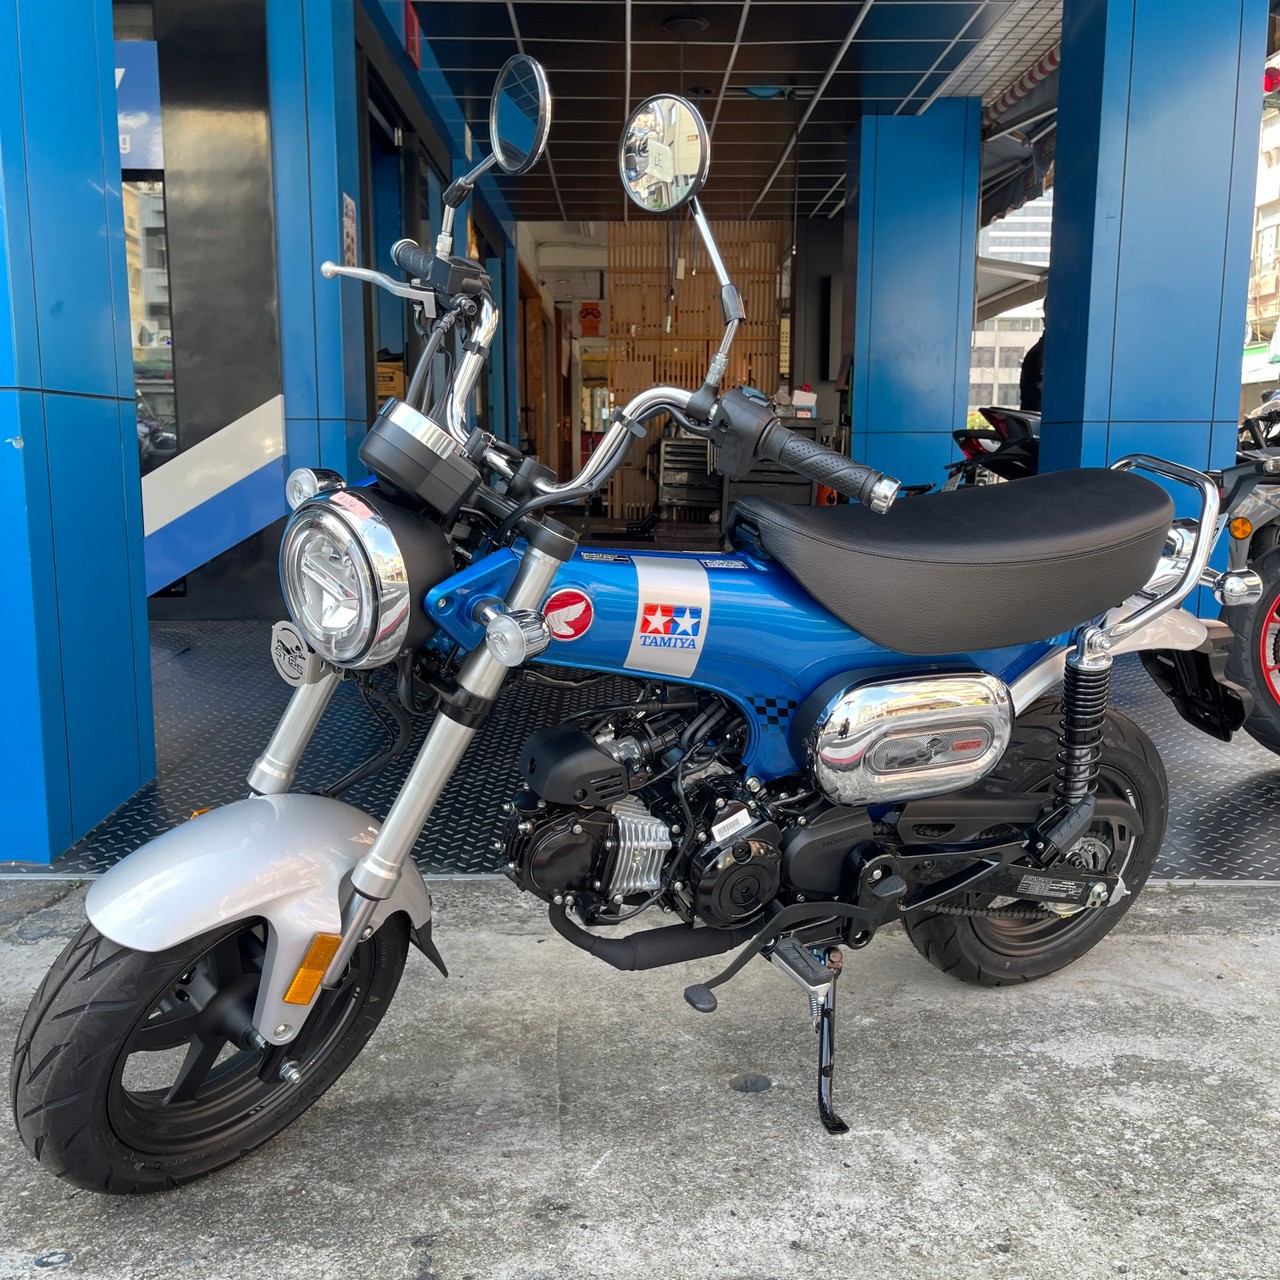 【飛翔國際】HONDA DAX 125 - 「Webike-摩托車市」 【出售車輛】Honda Dax125 X TAMIYA 聯名款